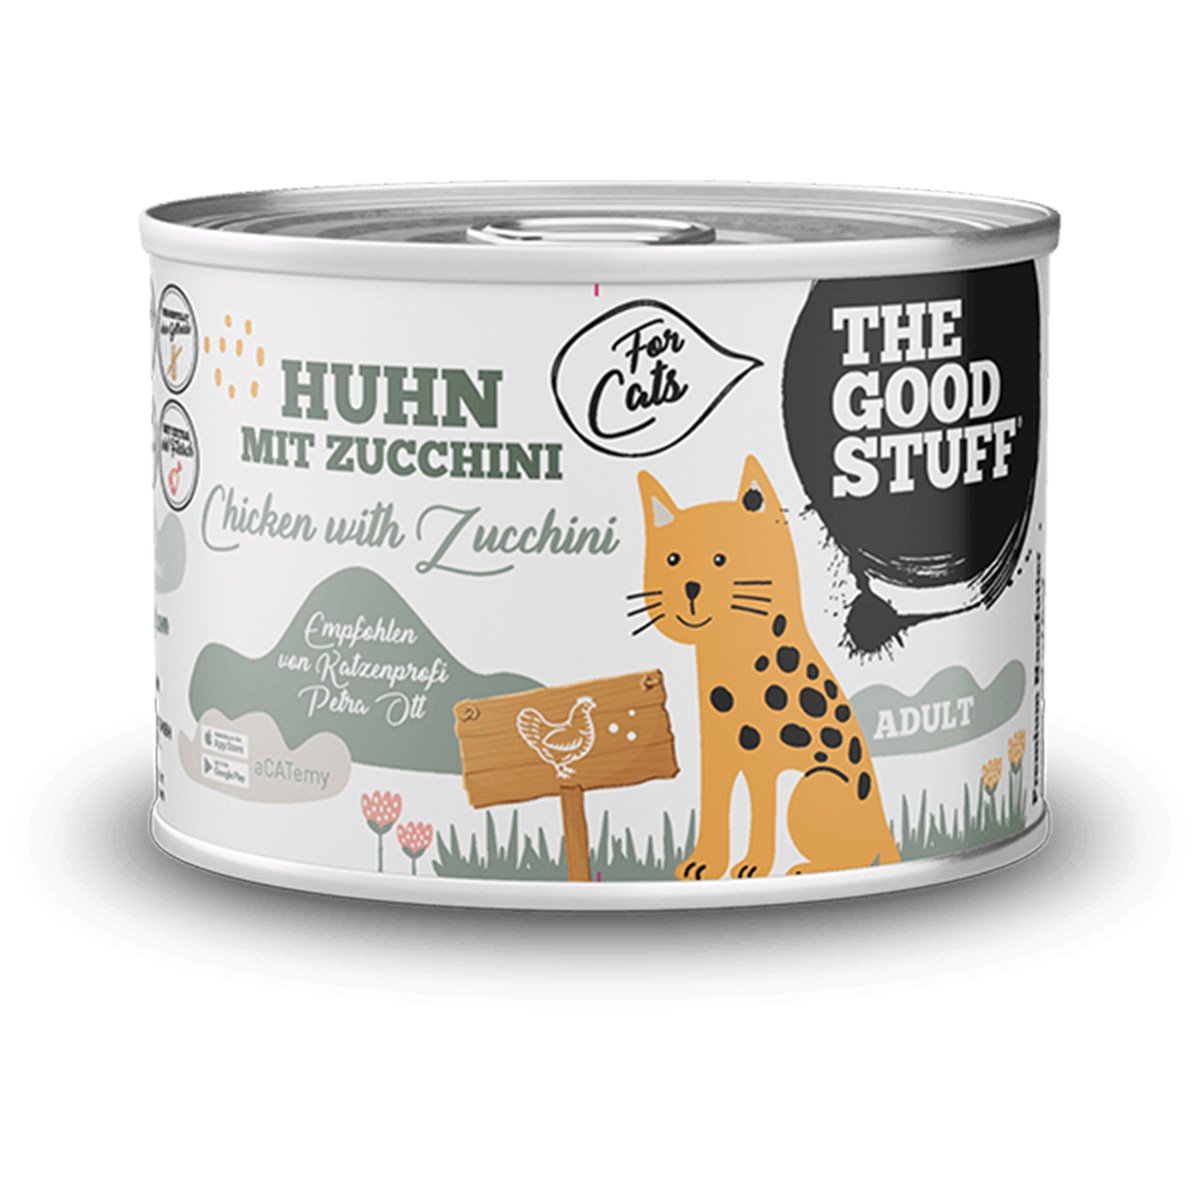 The Goodstuff Adult Huhn & Zucchini 6x200g von The Goodstuff